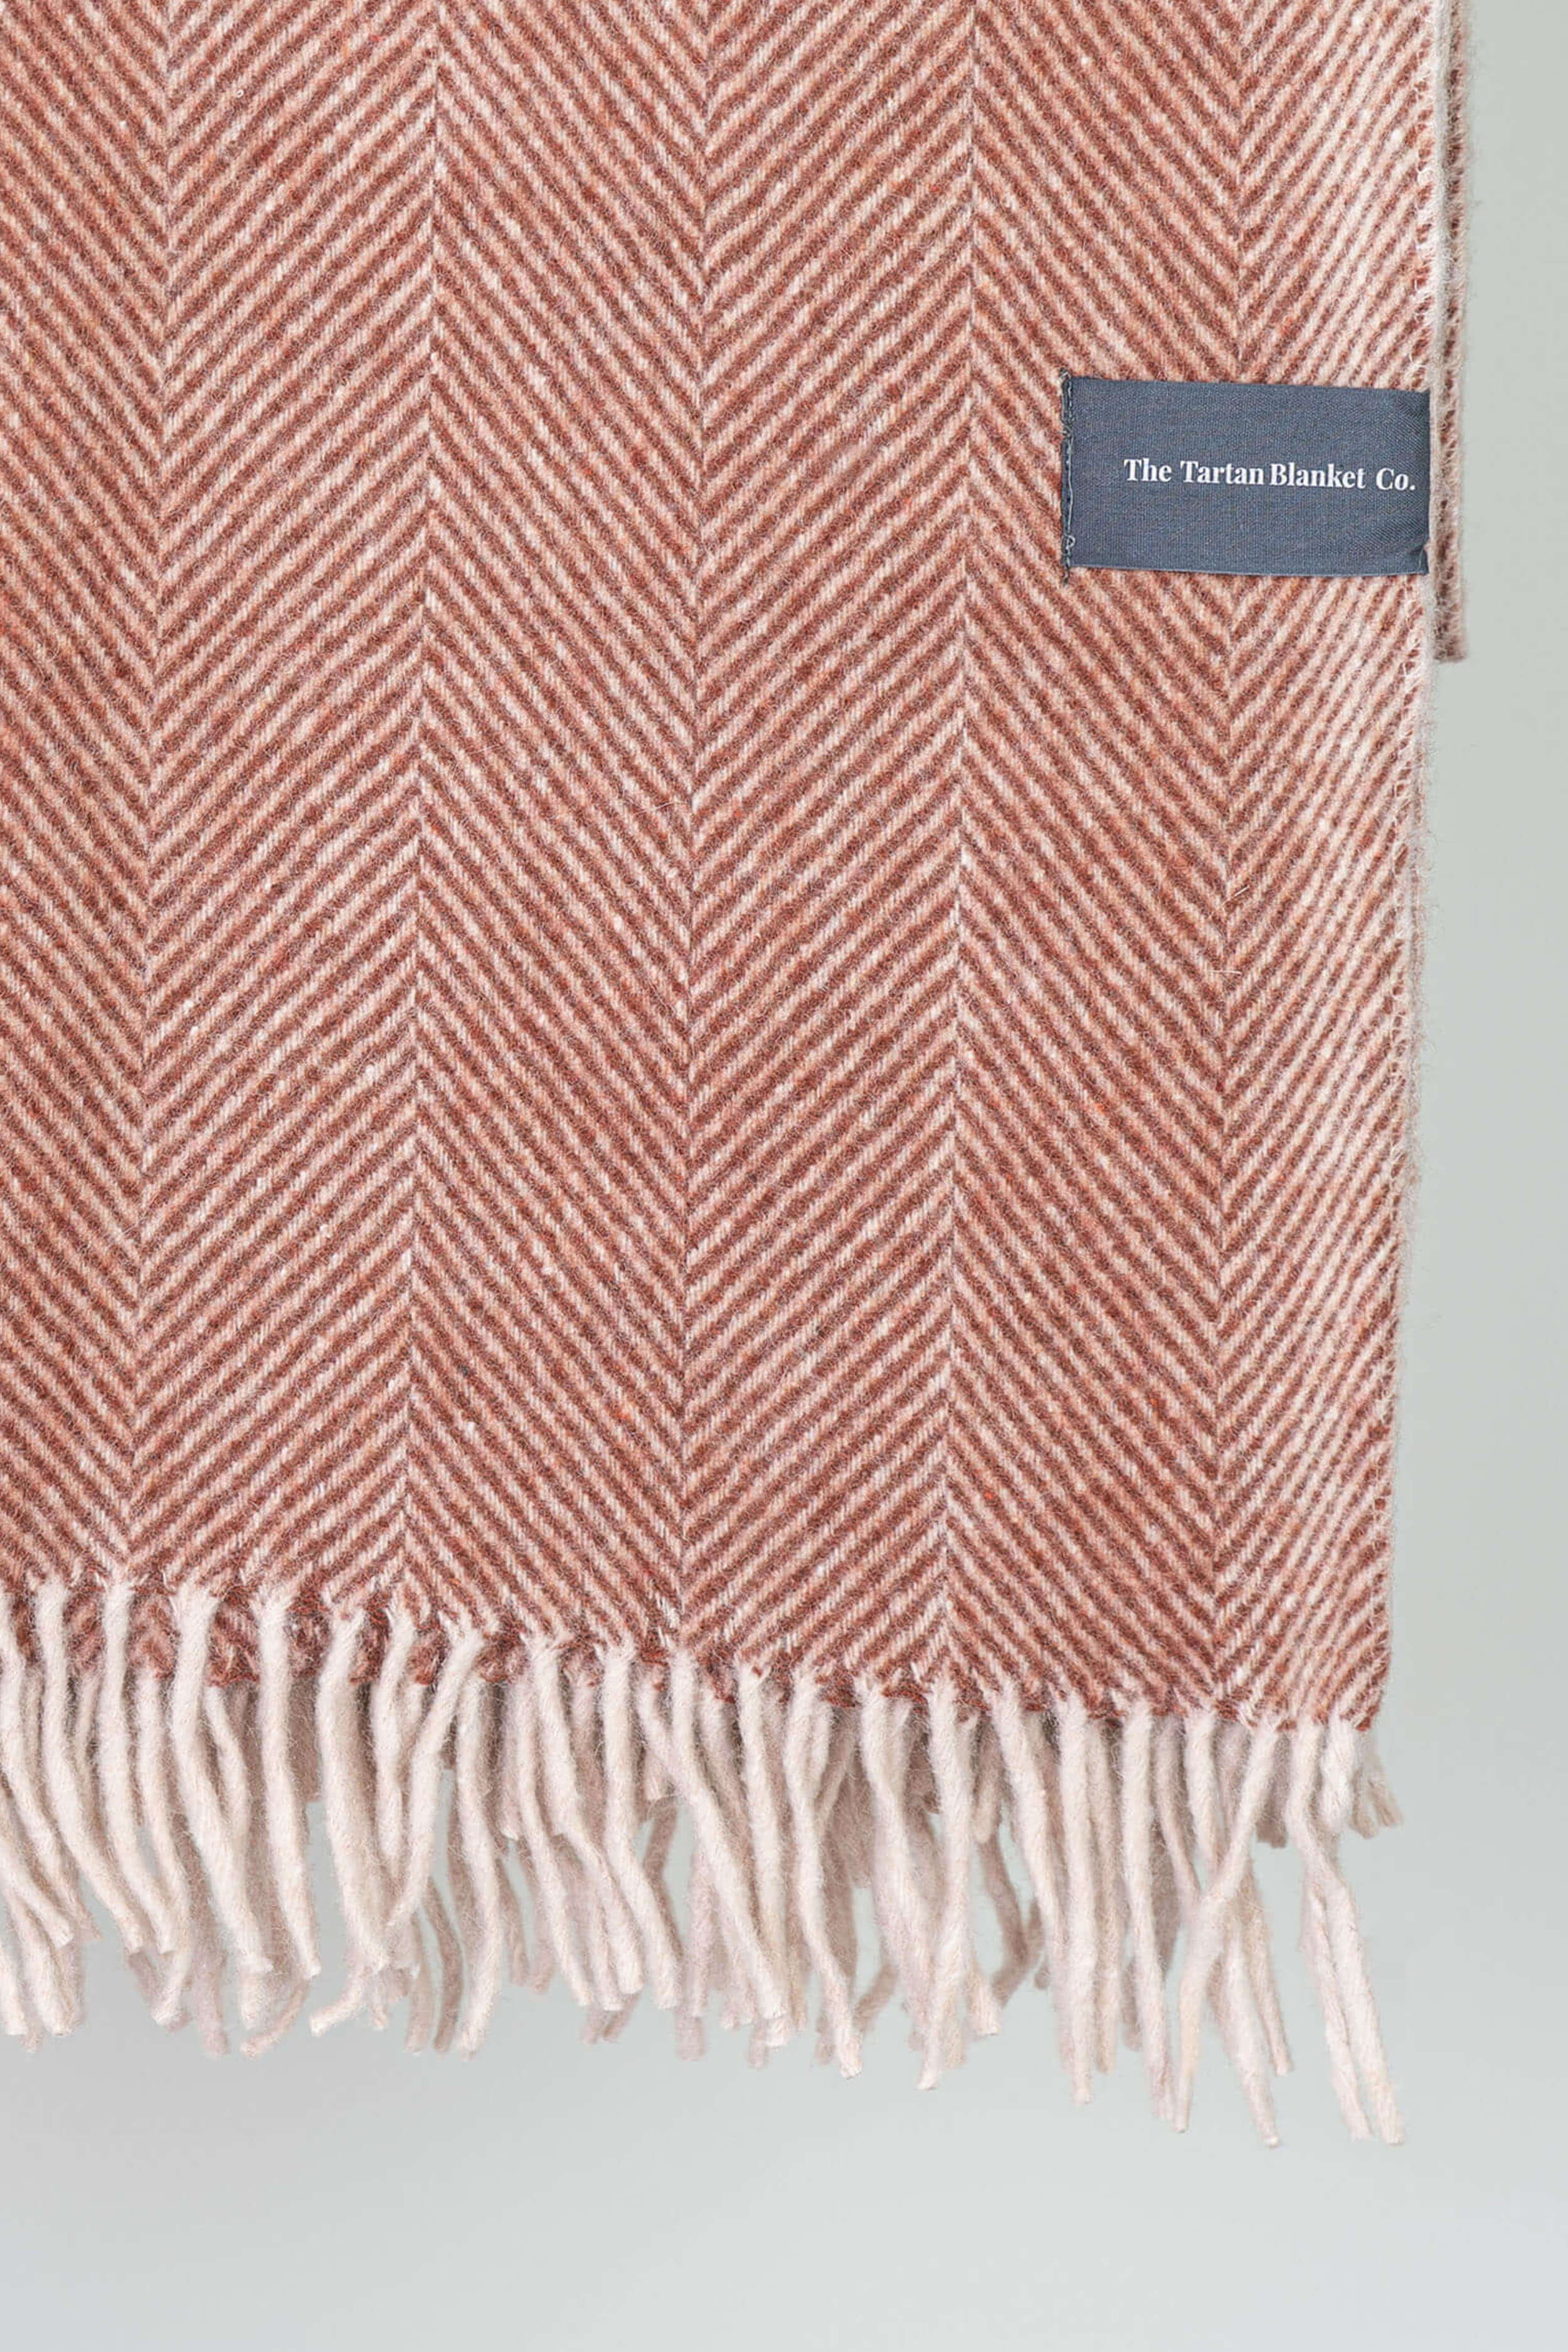 Rust Herringbone Wool Blanket By The Tartan Blanket Co - Coates & Warner